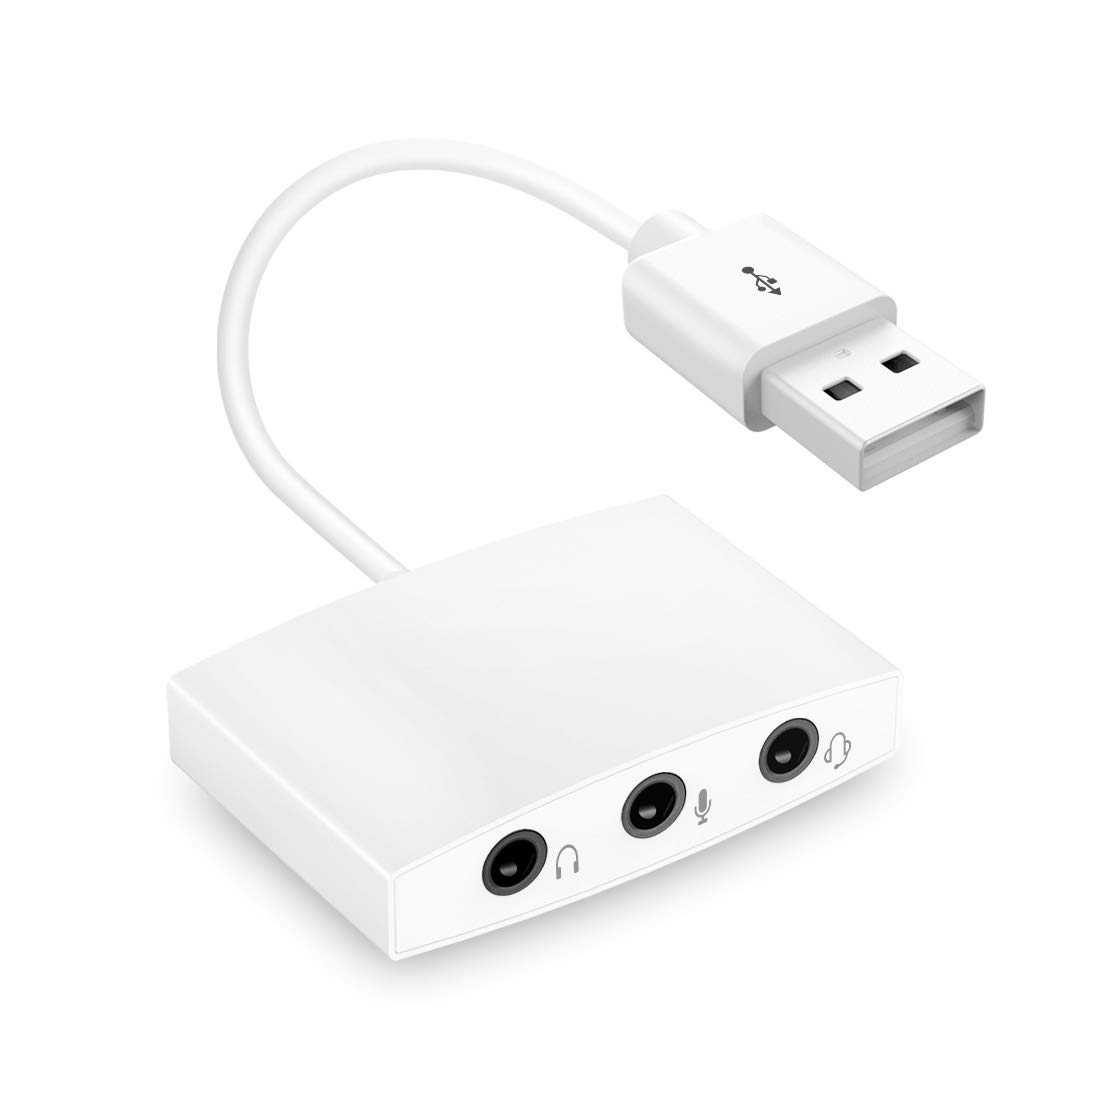 外付けサウンドカード USBサウンドカード Iseebiz USB オーディオ 変換アダプタ 3.5mm 7.1ch 4極 TRRS ミニジャック ヘッドホン マイク端子 高音質 PS4,Mac,Mac,Windows対応